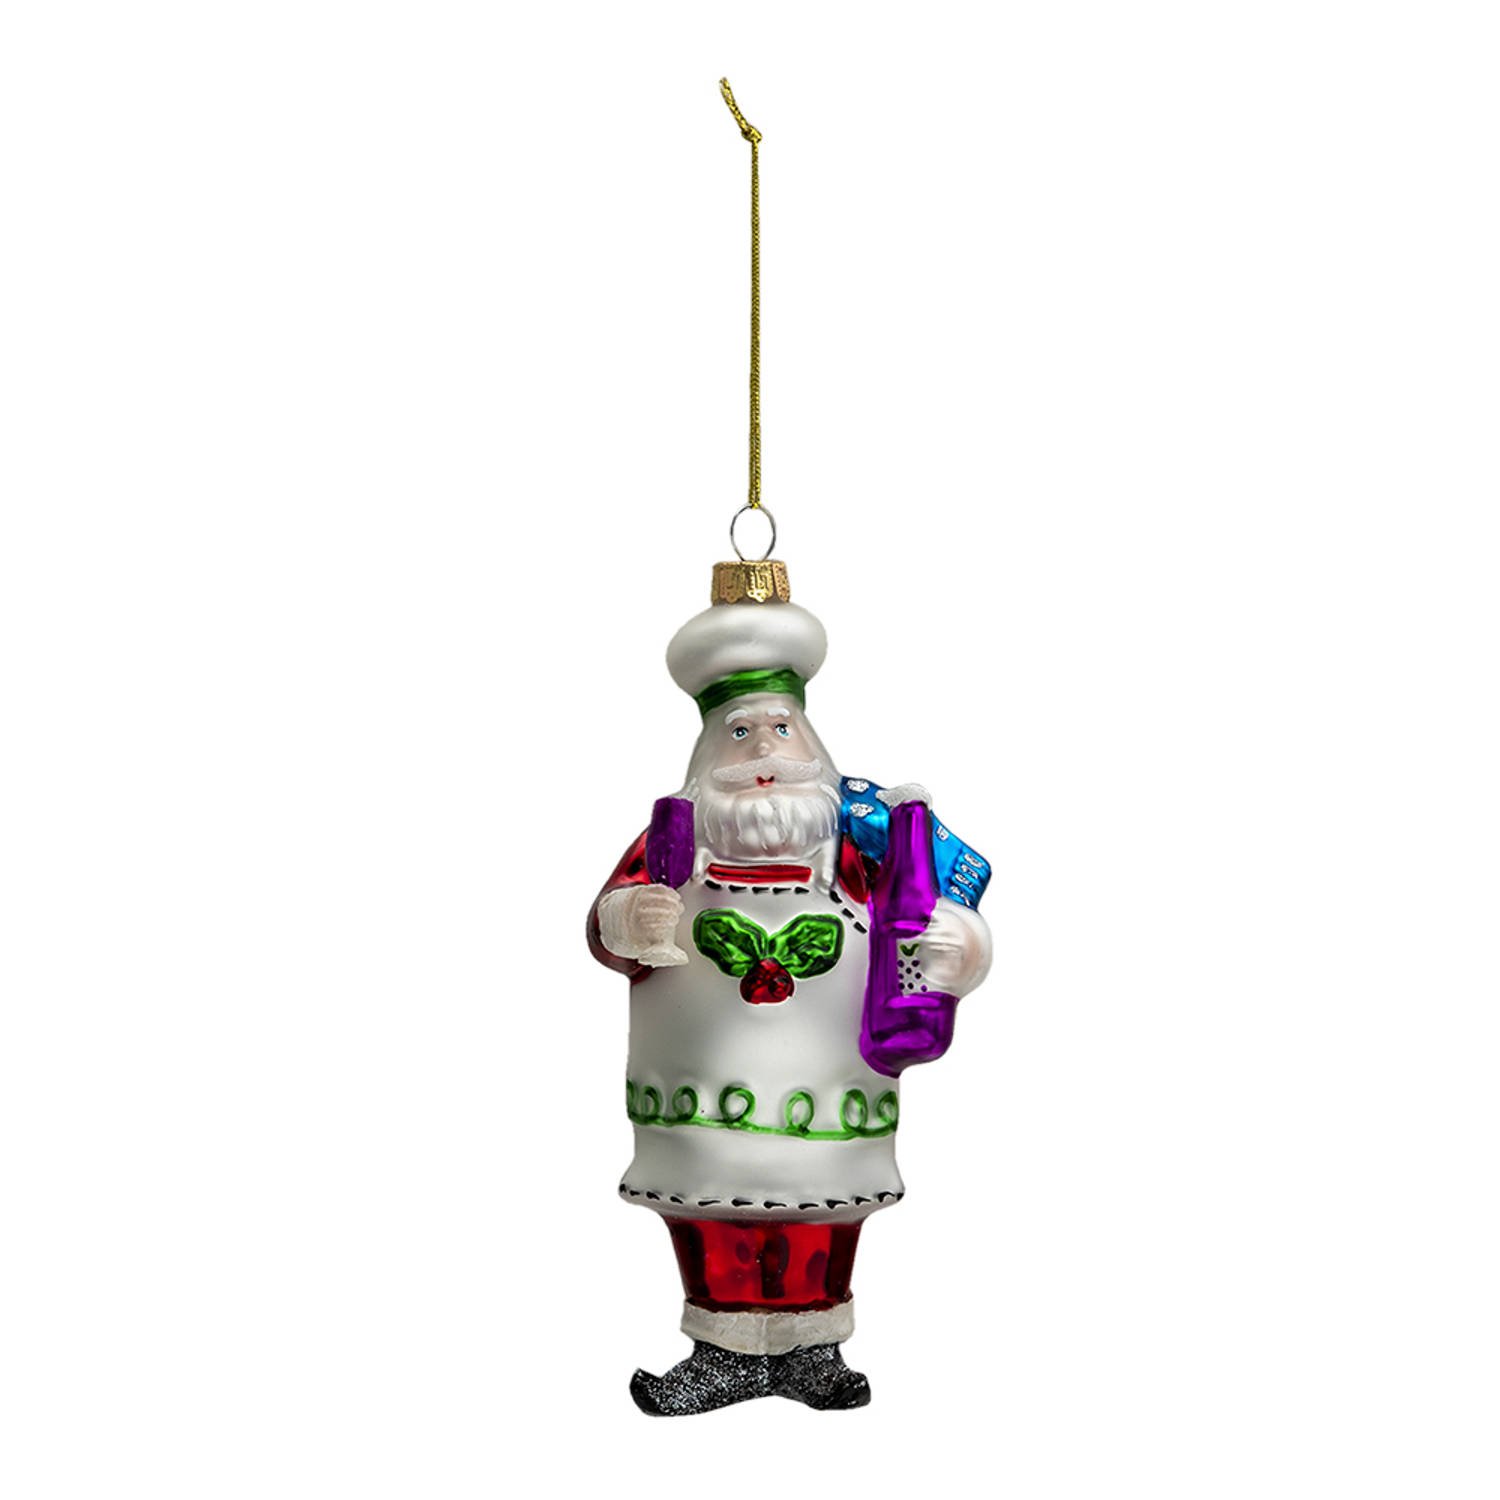 HAES DECO - Kersthanger Kerstman - Formaat 8x6x17 cm - Kleur Wit - Materiaal Glas / Polyresin - Kerstversiering, Kerstdecoratie, Decoratie Hanger, Kerstboomversiering